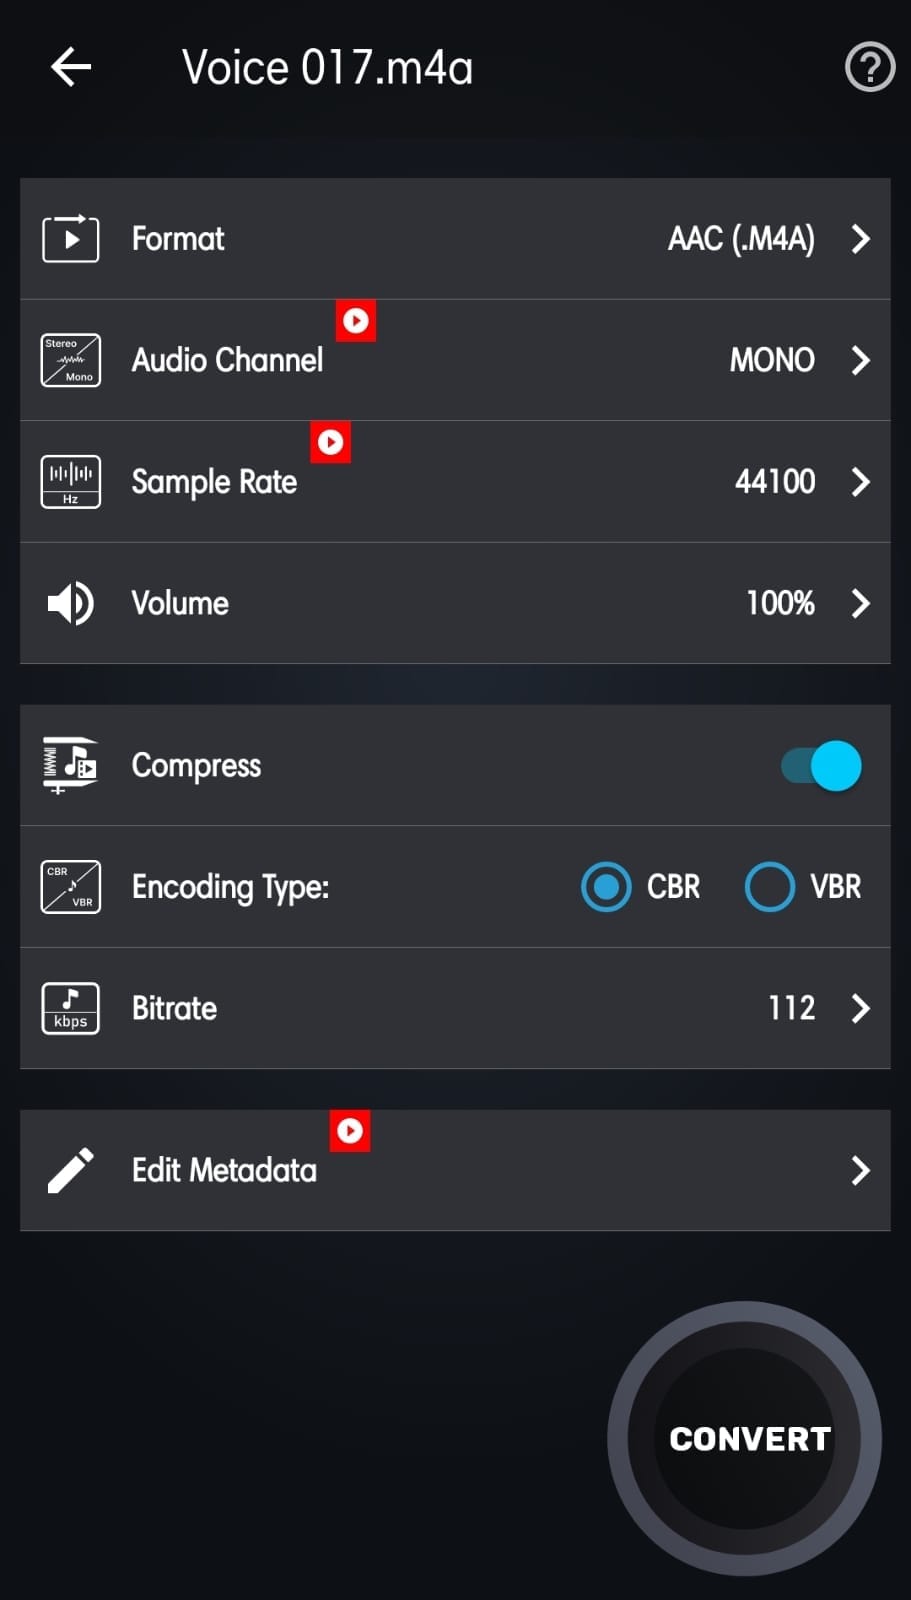 Audio Cutter Converter Merger ermÃķglicht die Anpassung von Bitrate und Kodierung